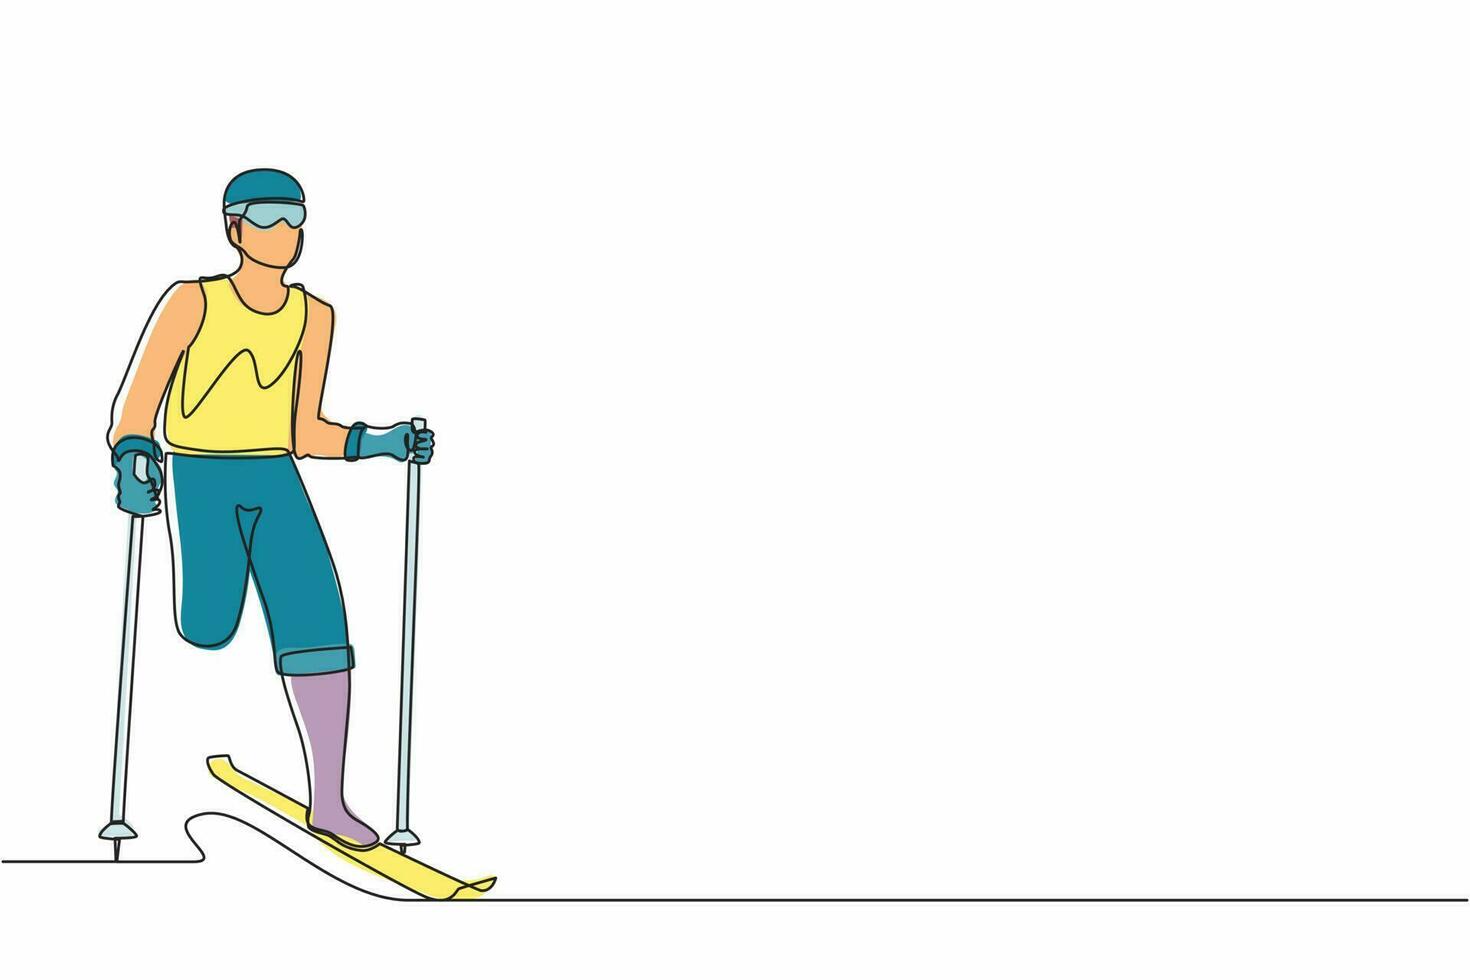 enda en rad ritning manlig idrottare skidåkare utan ben skidor i snö. idrottsman med skidor och stavar i glasögon på vintern. sport, turnering. kontinuerlig linje rita design vektorillustration vektor